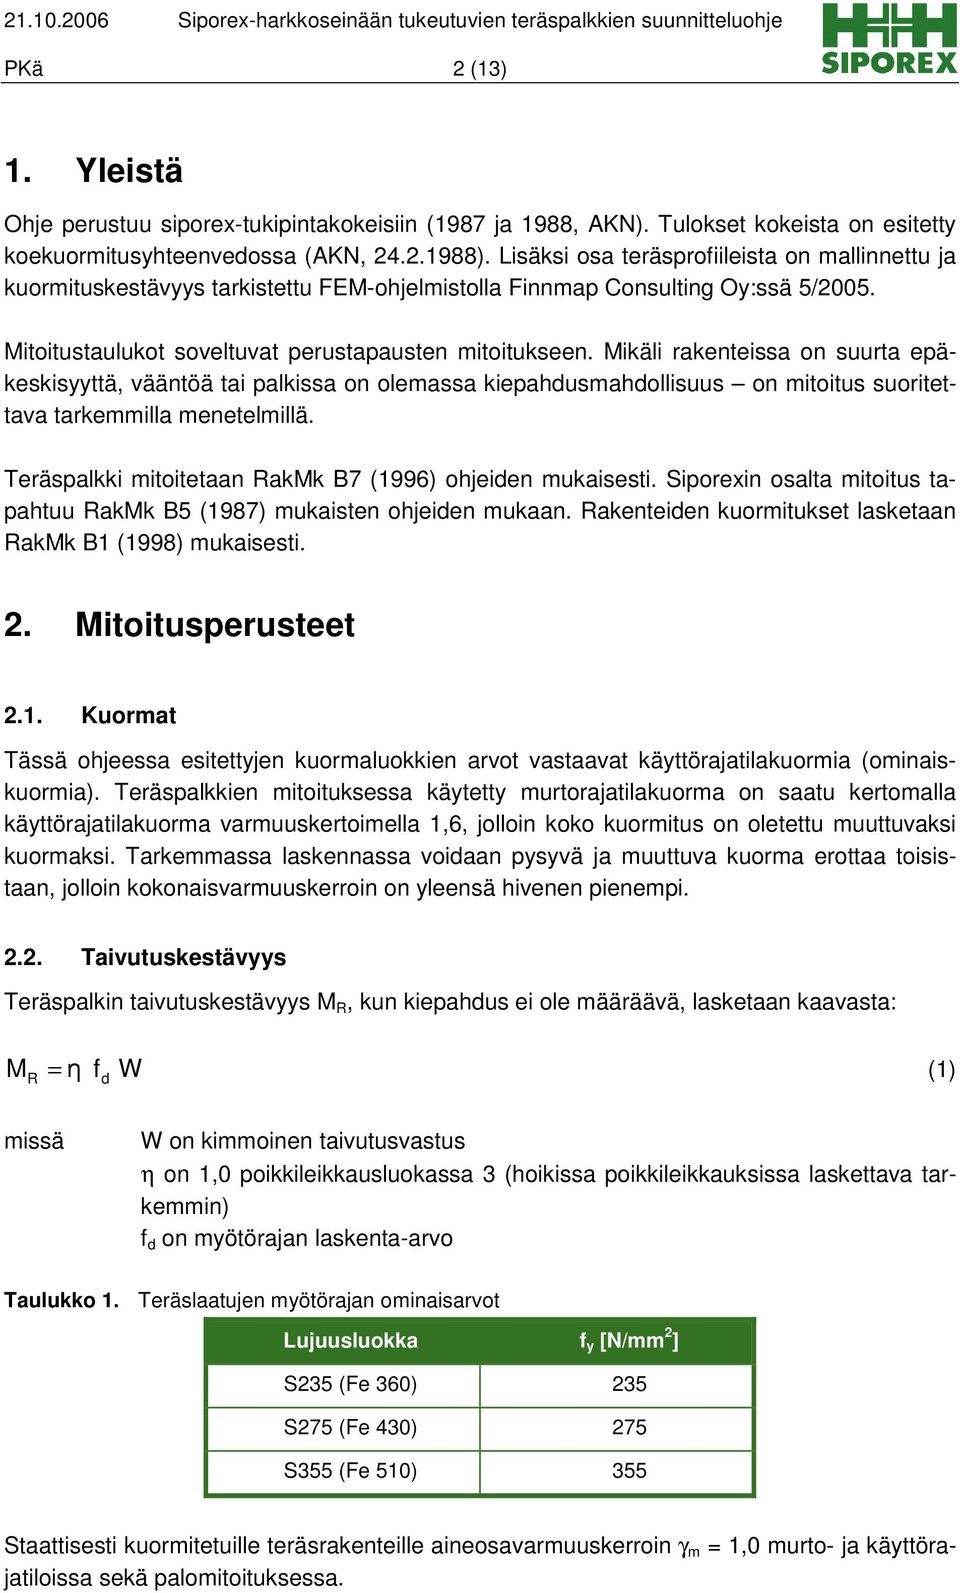 Lisäksi osa teräsprofiileista on mallinnettu ja kuormituskestävyys tarkistettu FEM-ohjelmistolla Finnmap Consulting Oy:ssä 5/2005. Mitoitustaulukot soveltuvat perustapausten mitoitukseen.